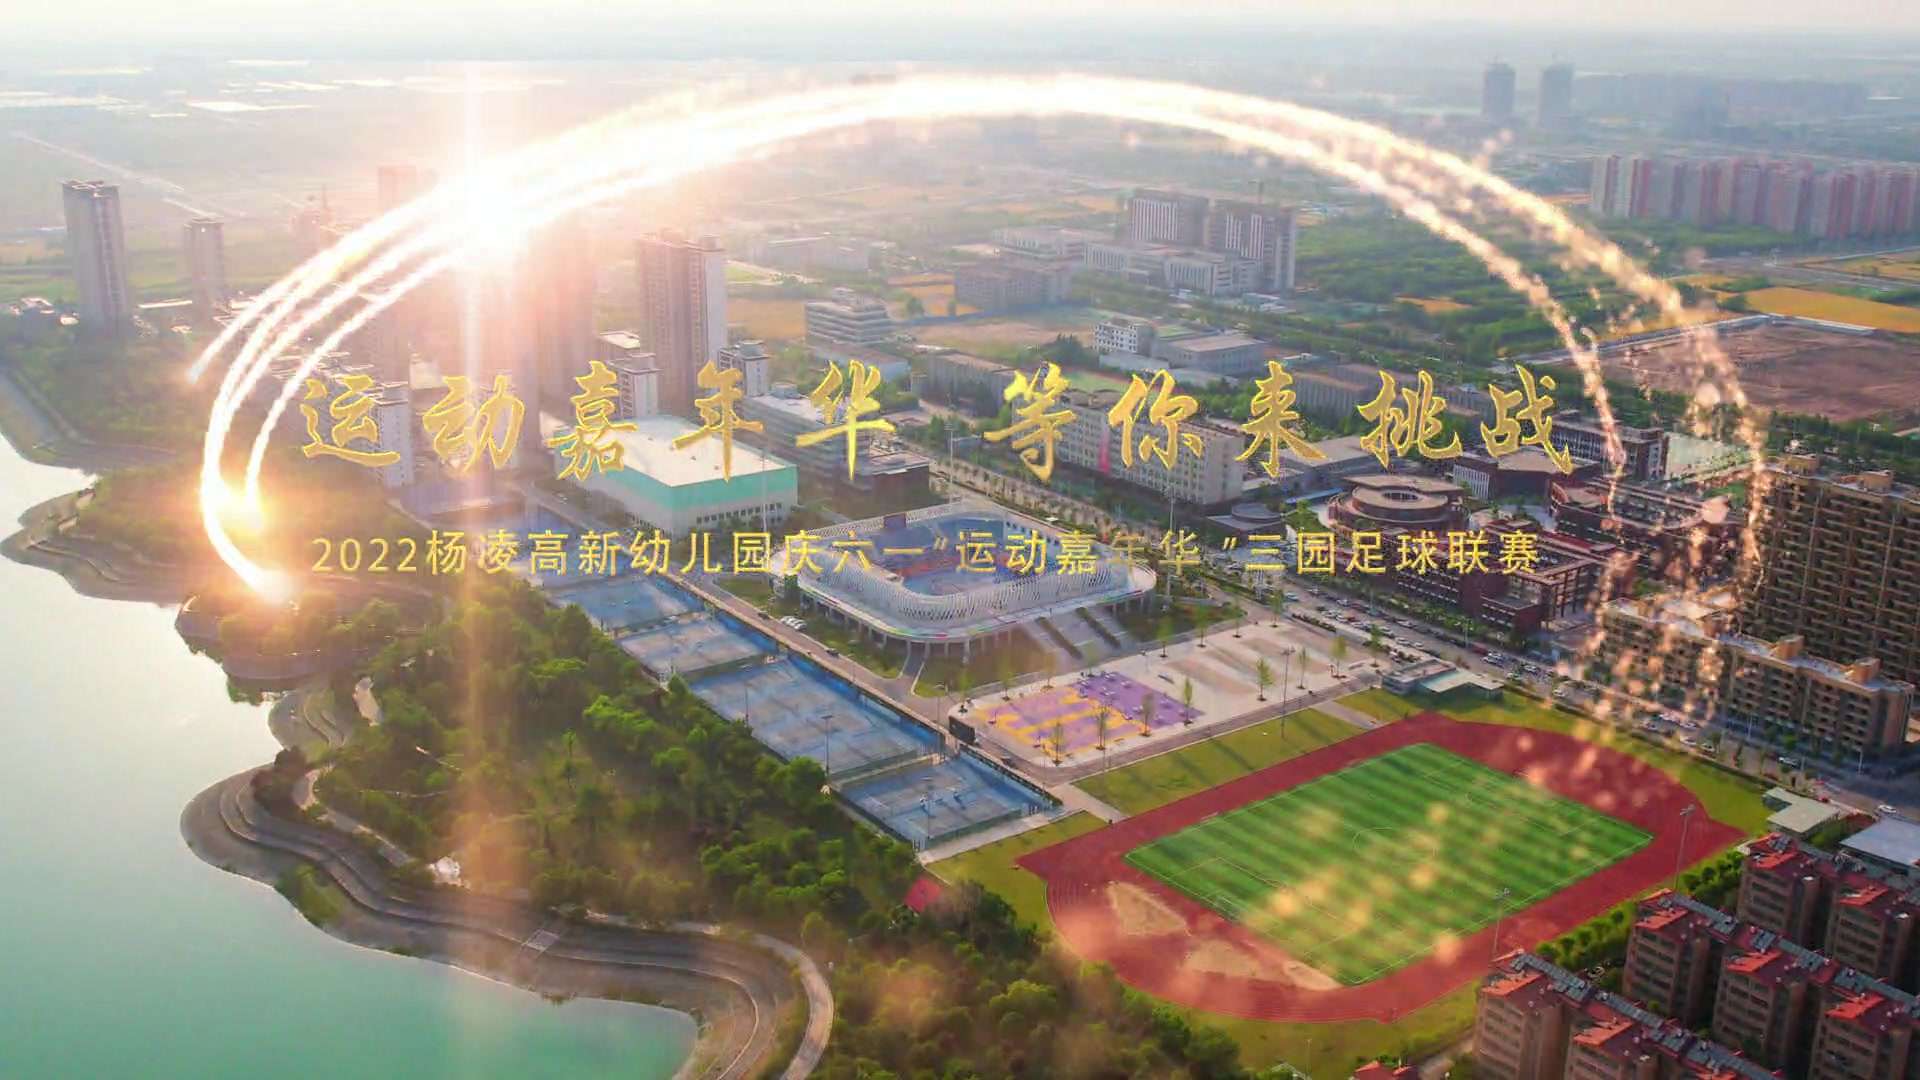 2022高新幼儿园庆六一“运动嘉年华 等你来挑战”三园足球联赛